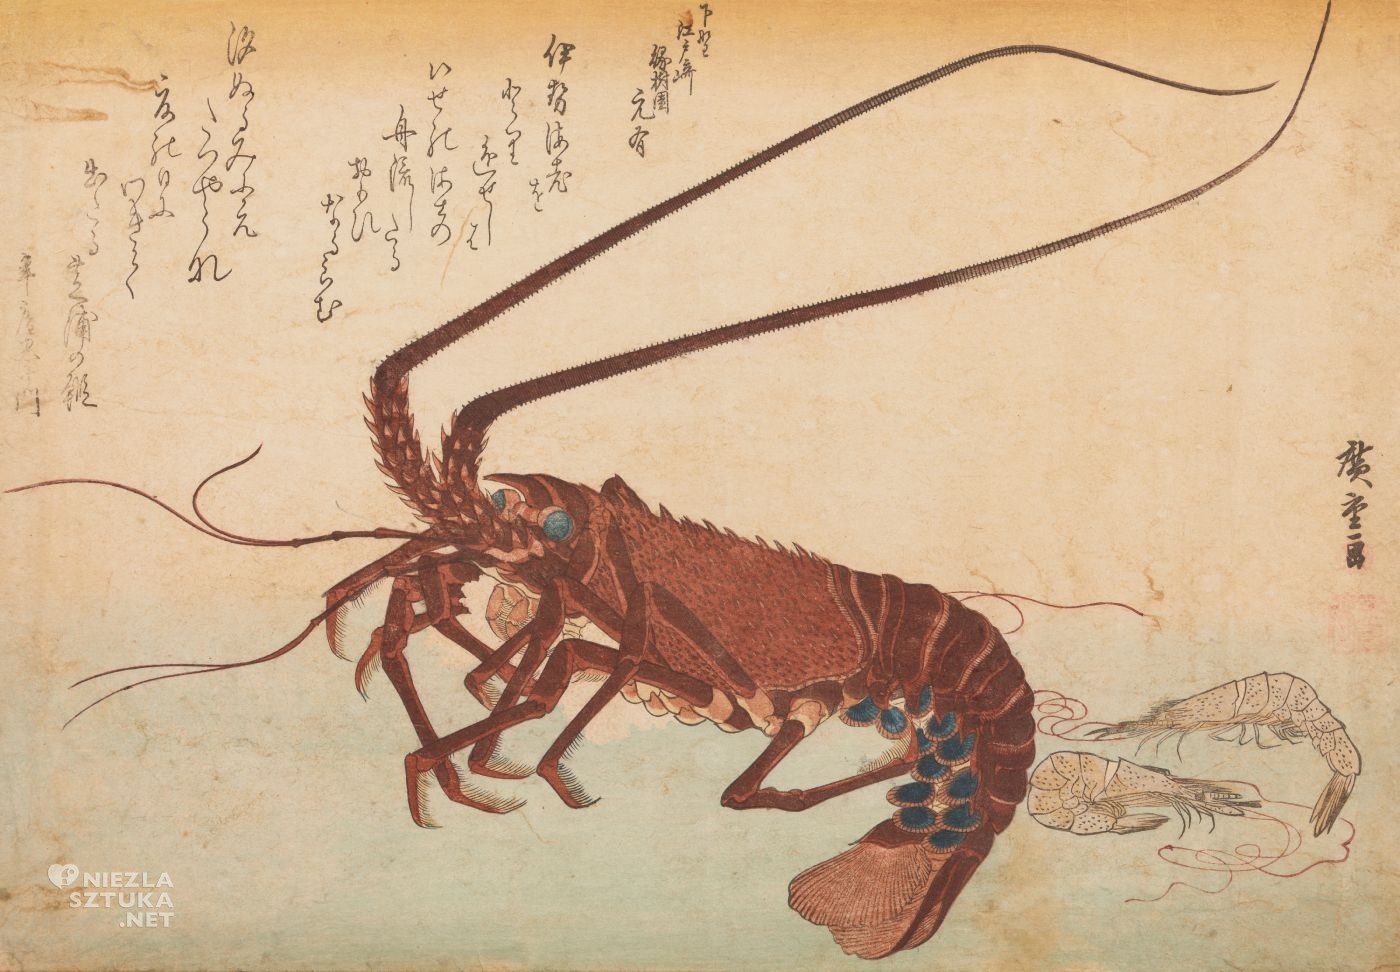 Utagawa Hiroshige, langusta i krewetki, grafika artystyczna, drzeworyt, sztuka, sztuka japońska, ukiyo-e, drzeworyty japońskie, niezła sztuka